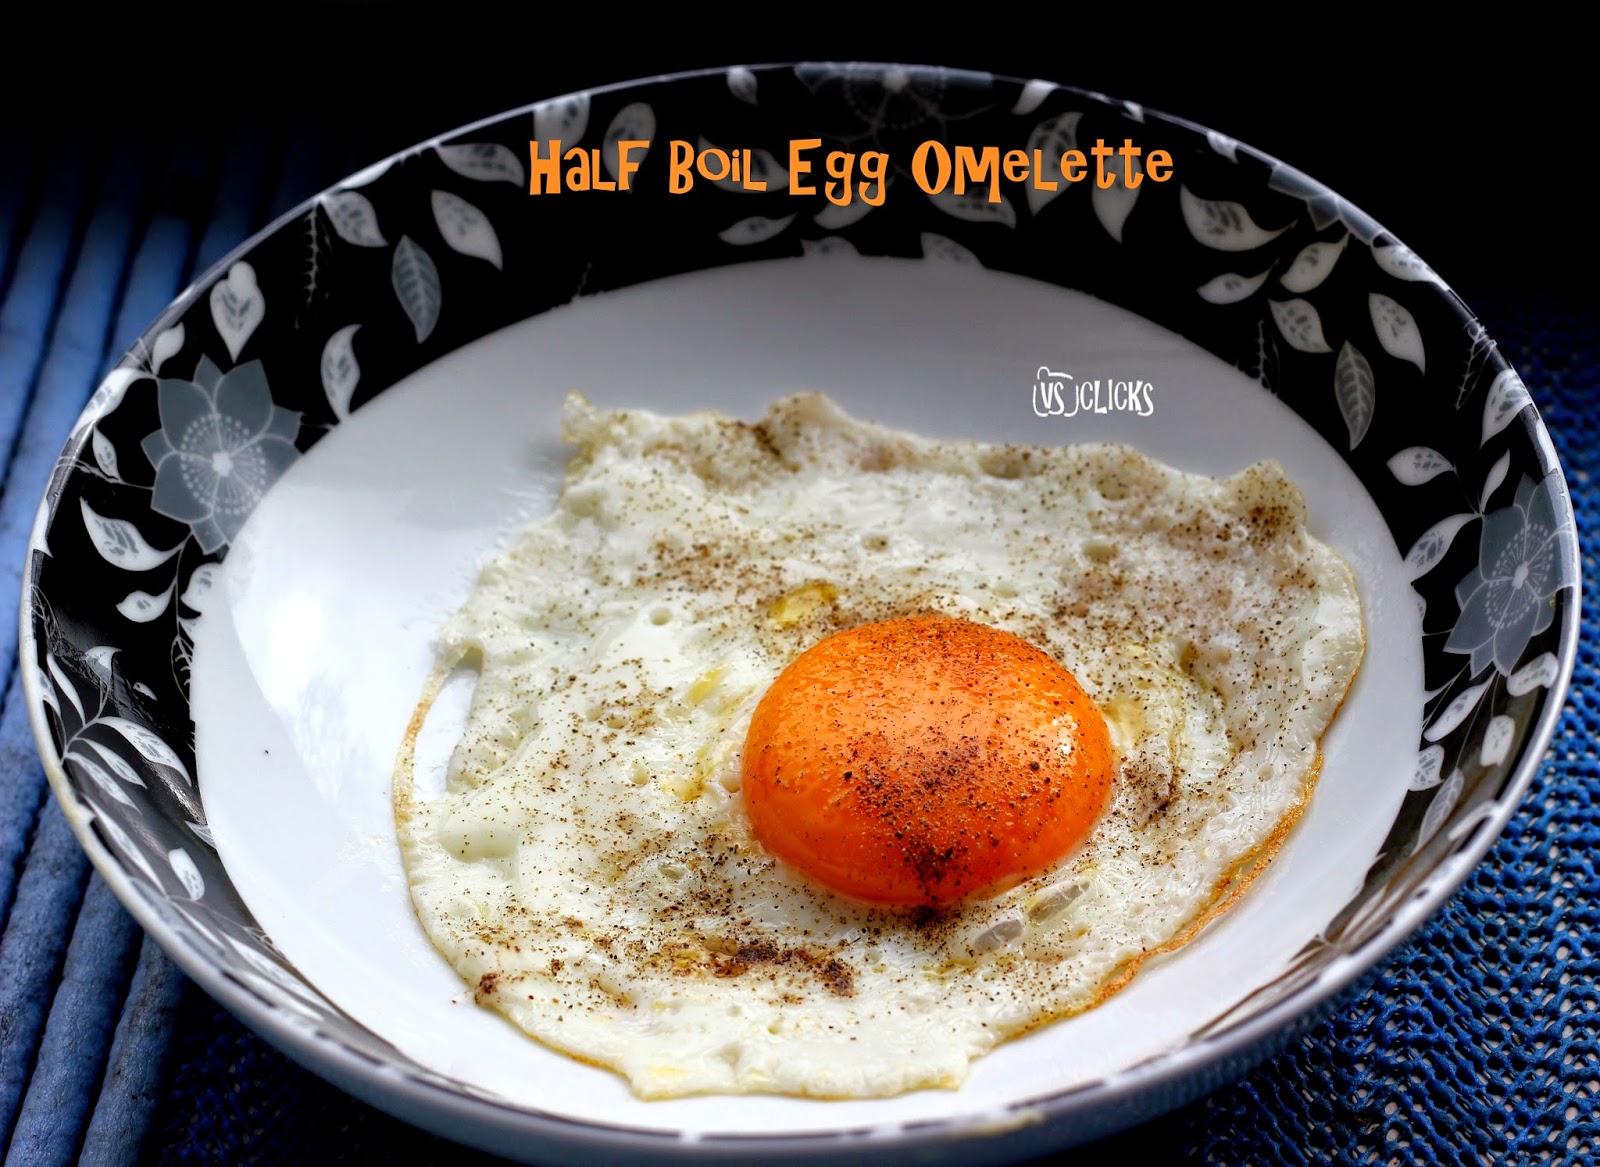 Half Boil Egg Omelette